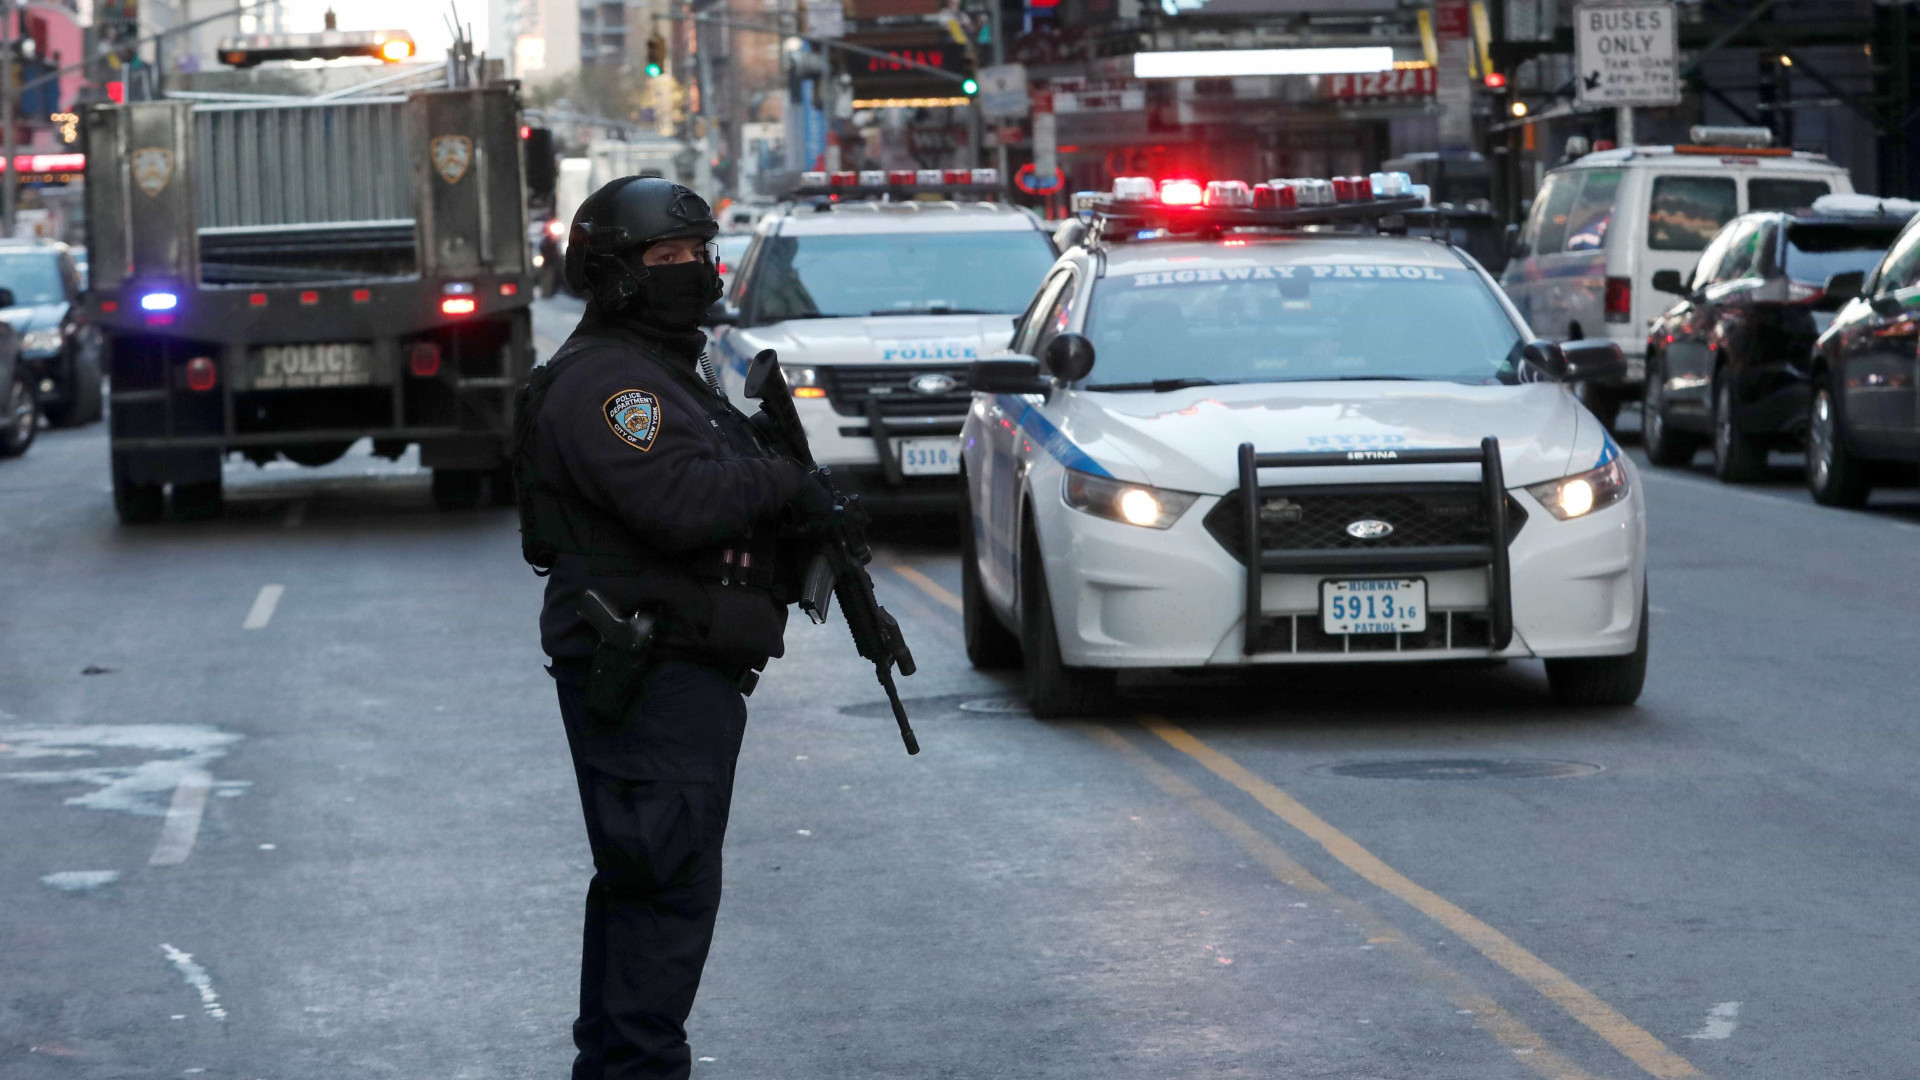 Prefeito confirma atentado terrorista em Nova York; suspeito é preso